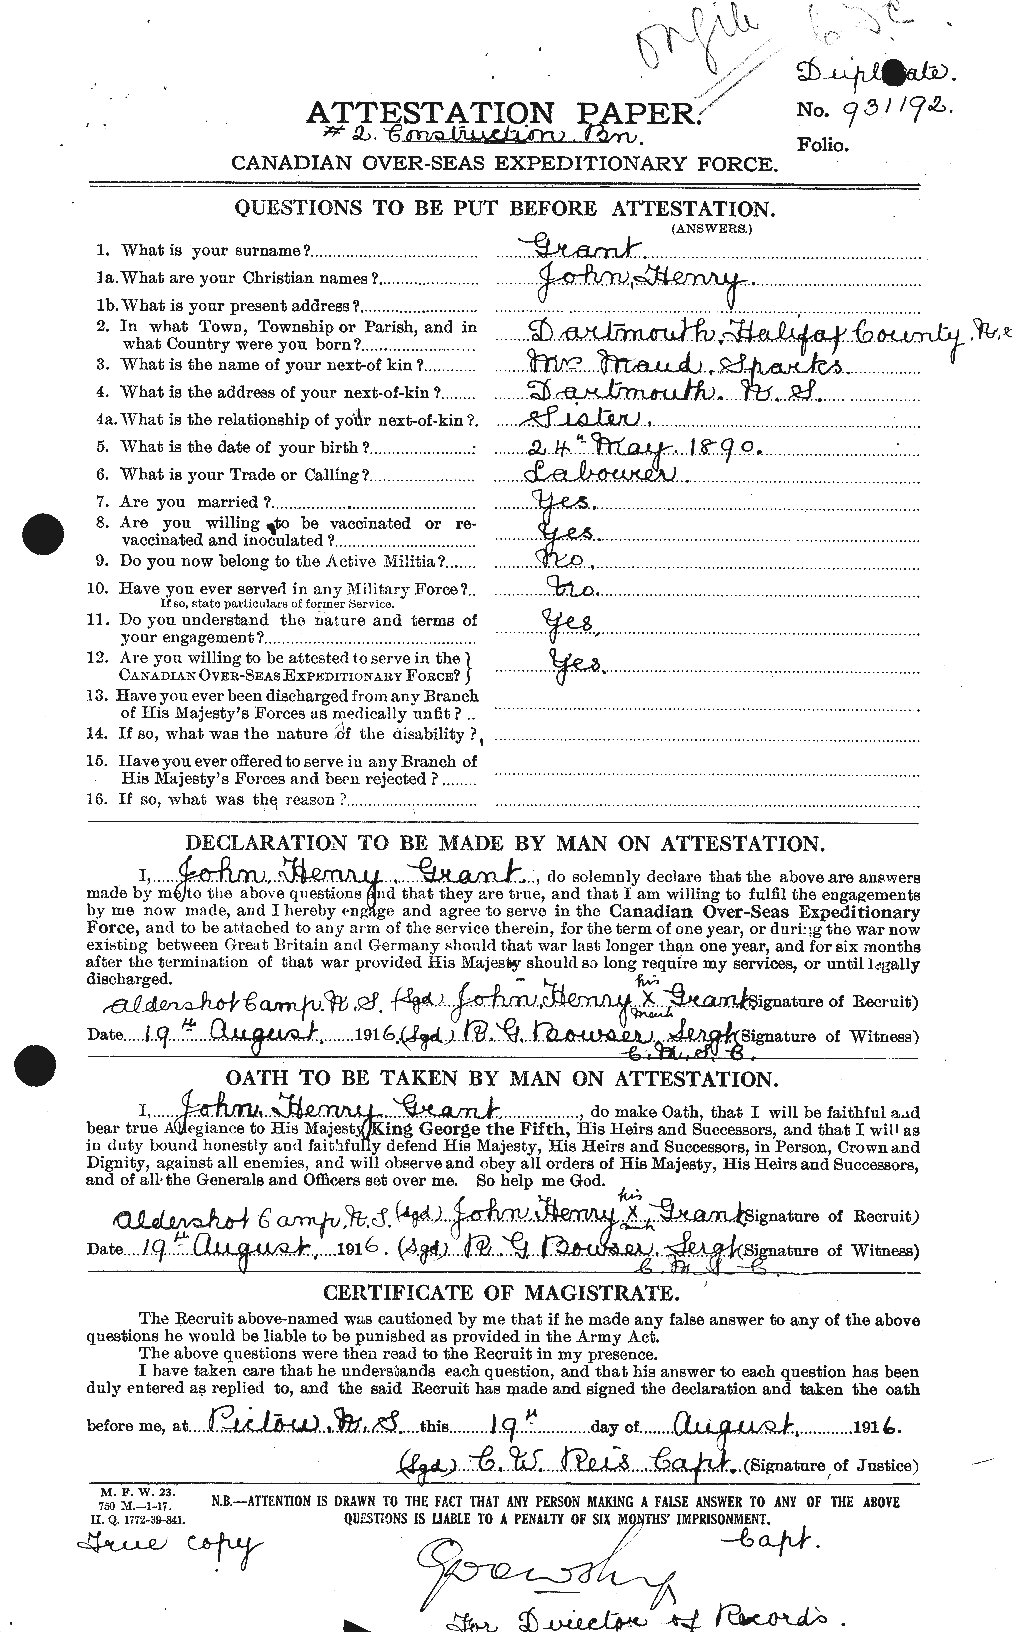 Dossiers du Personnel de la Première Guerre mondiale - CEC 360946a